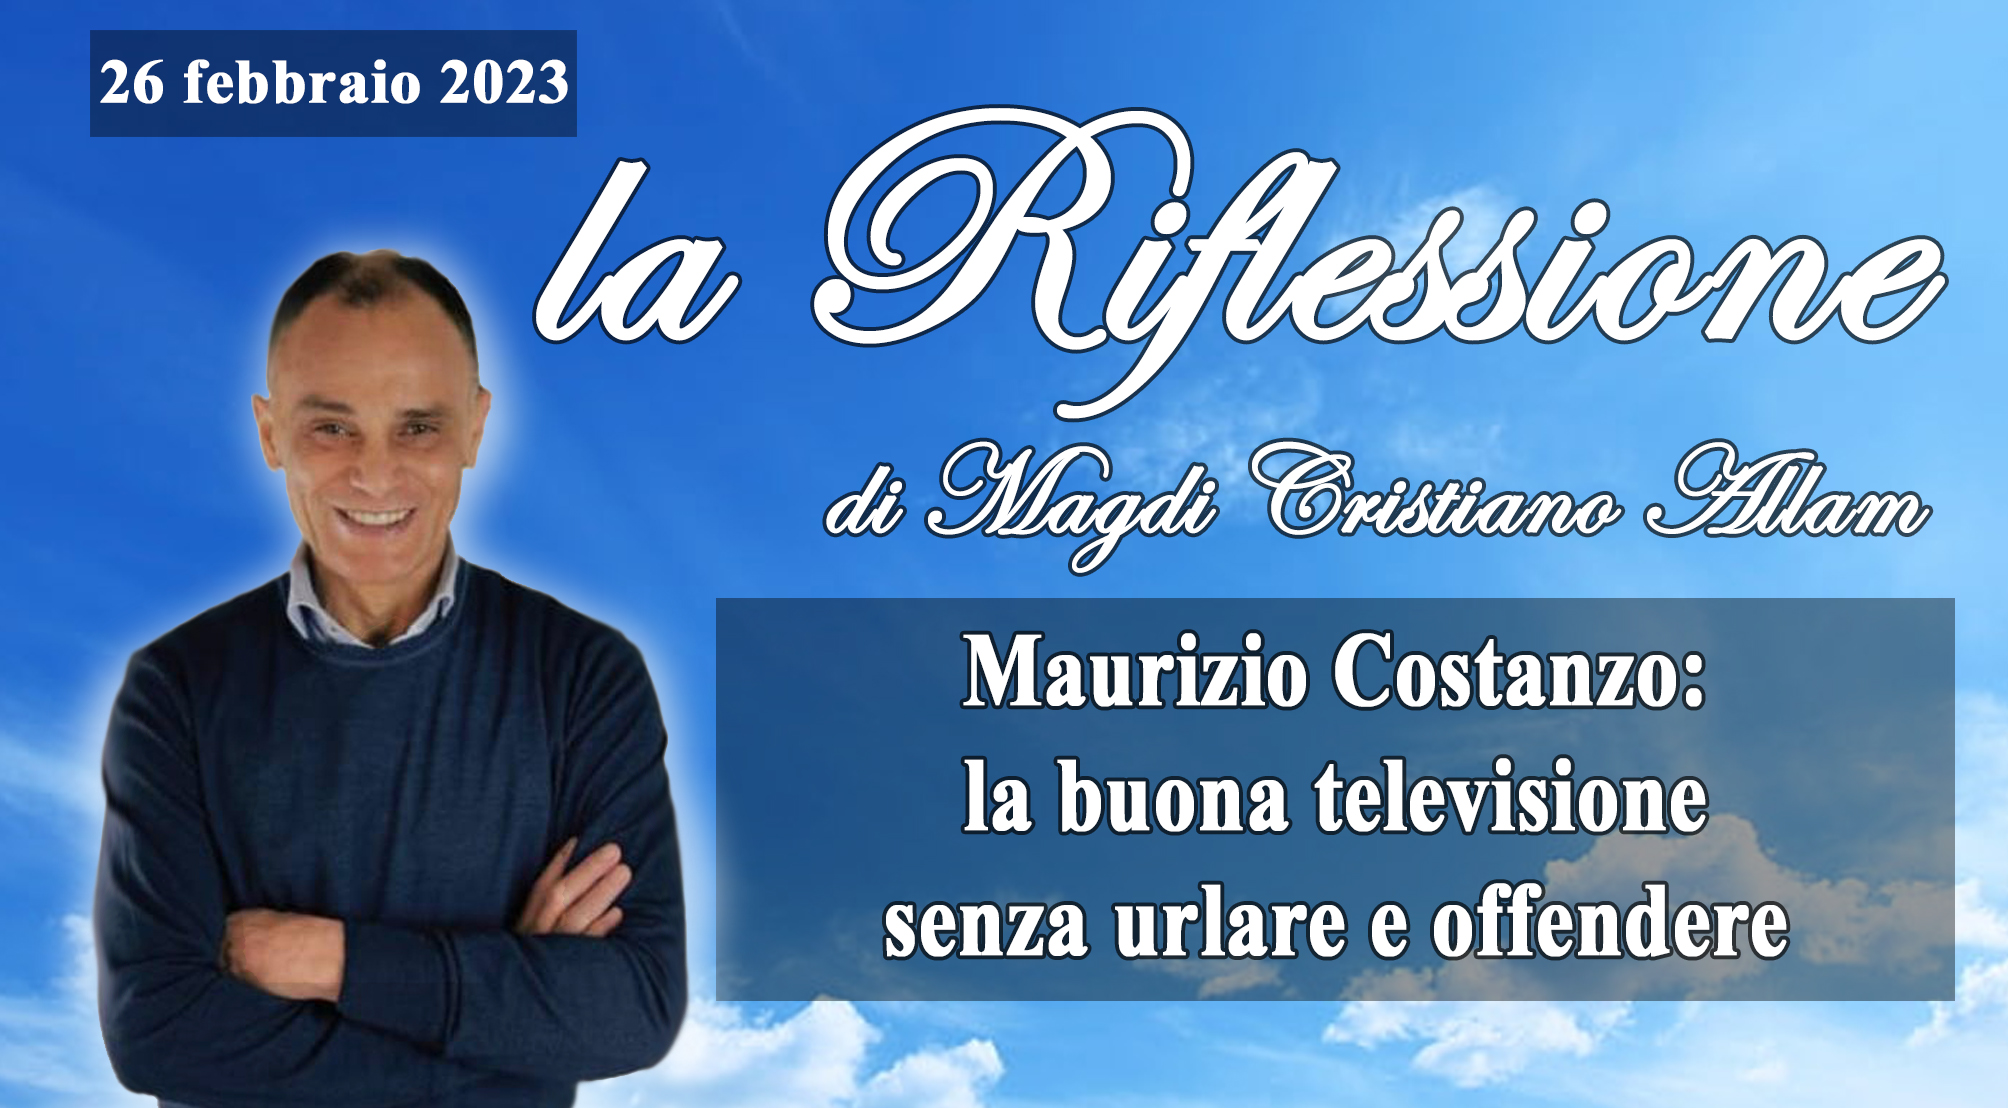 MAGLI CRISTIANO ALLAM: “Grazie Maurizio Costanzo. Da padrone di casa e patriarca della televisione italiana ha dimostrato che si può fare della buona televisione senza urlare e offendere”